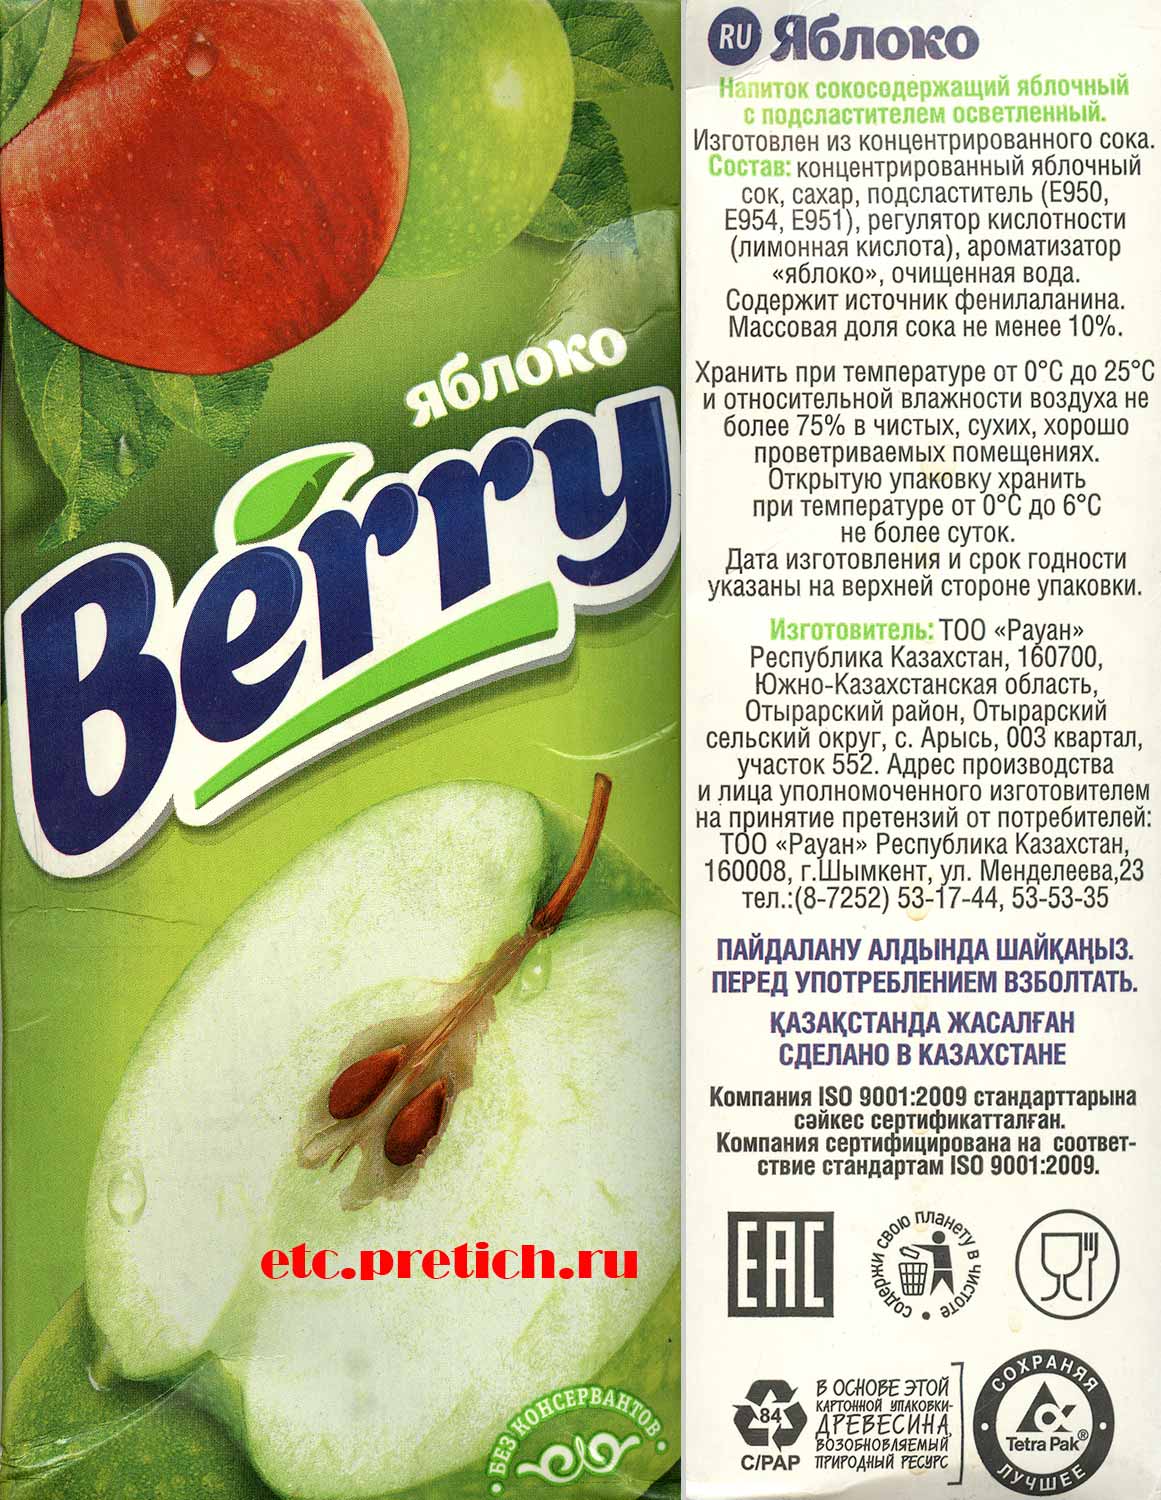 Яблочный напиток сокосодержаший Berry от Рауан это суррогат, не настоящий